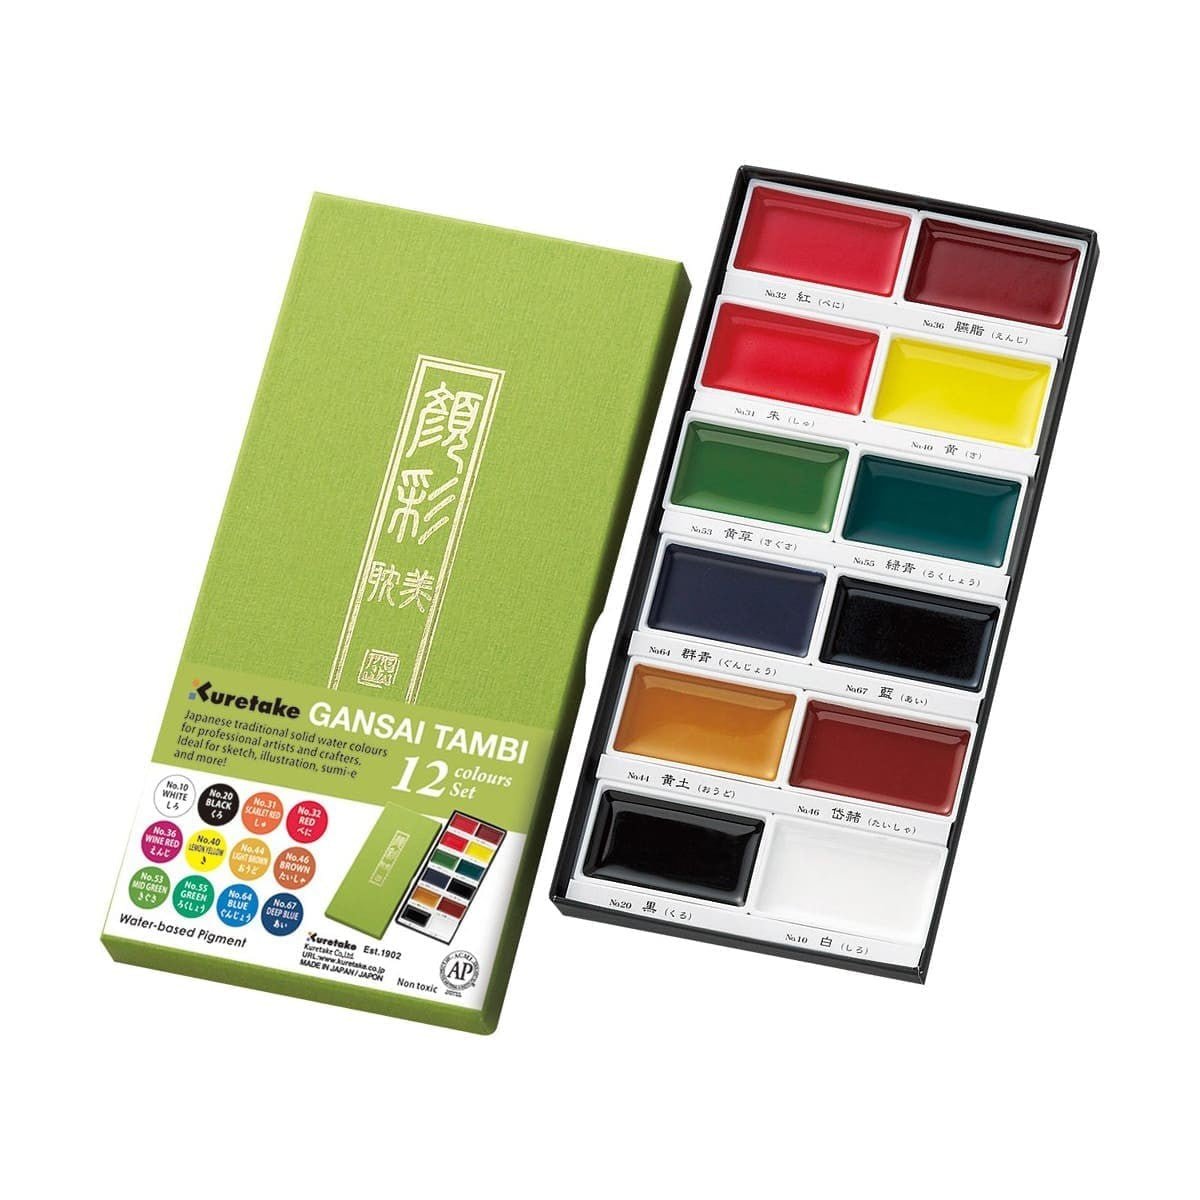 GANSAI TAMBI Akvarellfärg 12 färger - ZIG Kuretake - Tidformera